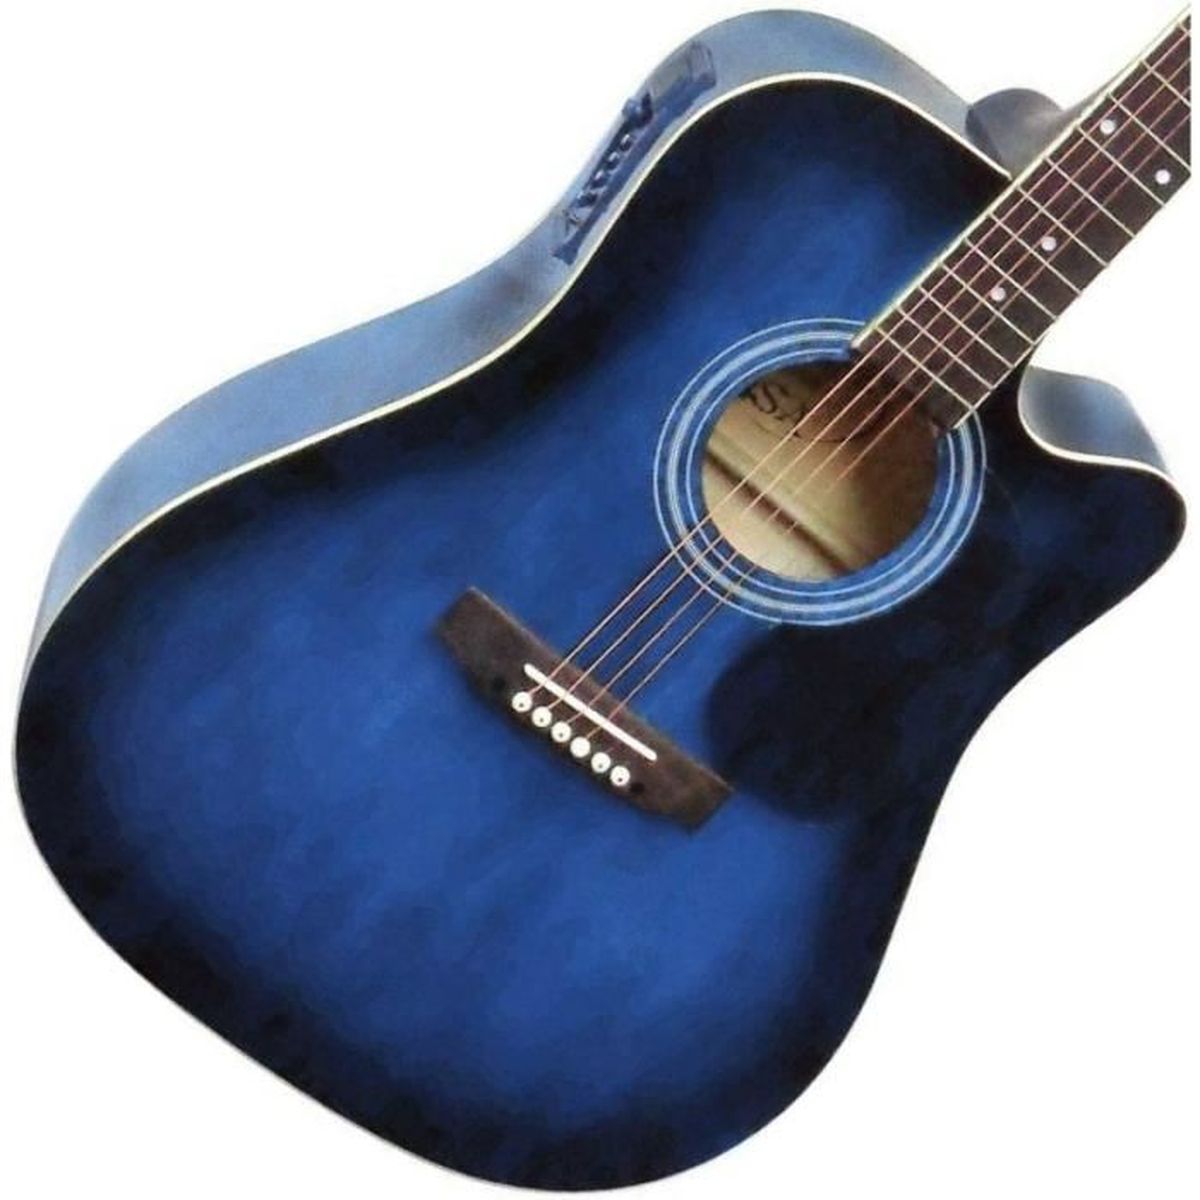 3 x Câble guitare Jack à Jack mono 6,35mm Instrument/Câble patch 3 couleurs/Pack de 3 1m Noir